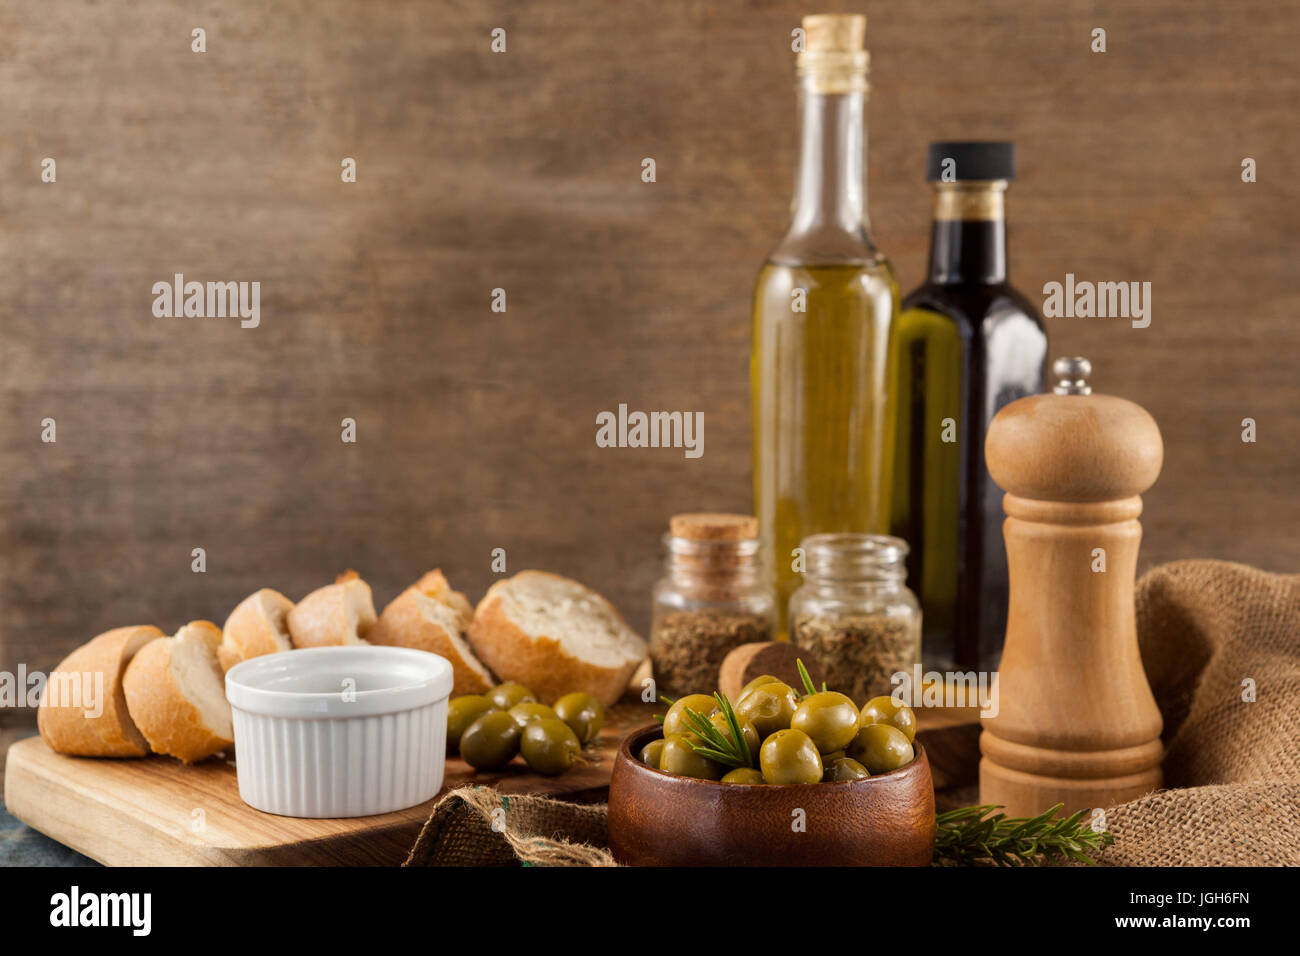 Le olive con pepe shaker e bottiglie di olio mediante il pane sulla tavola contro la parete Foto Stock